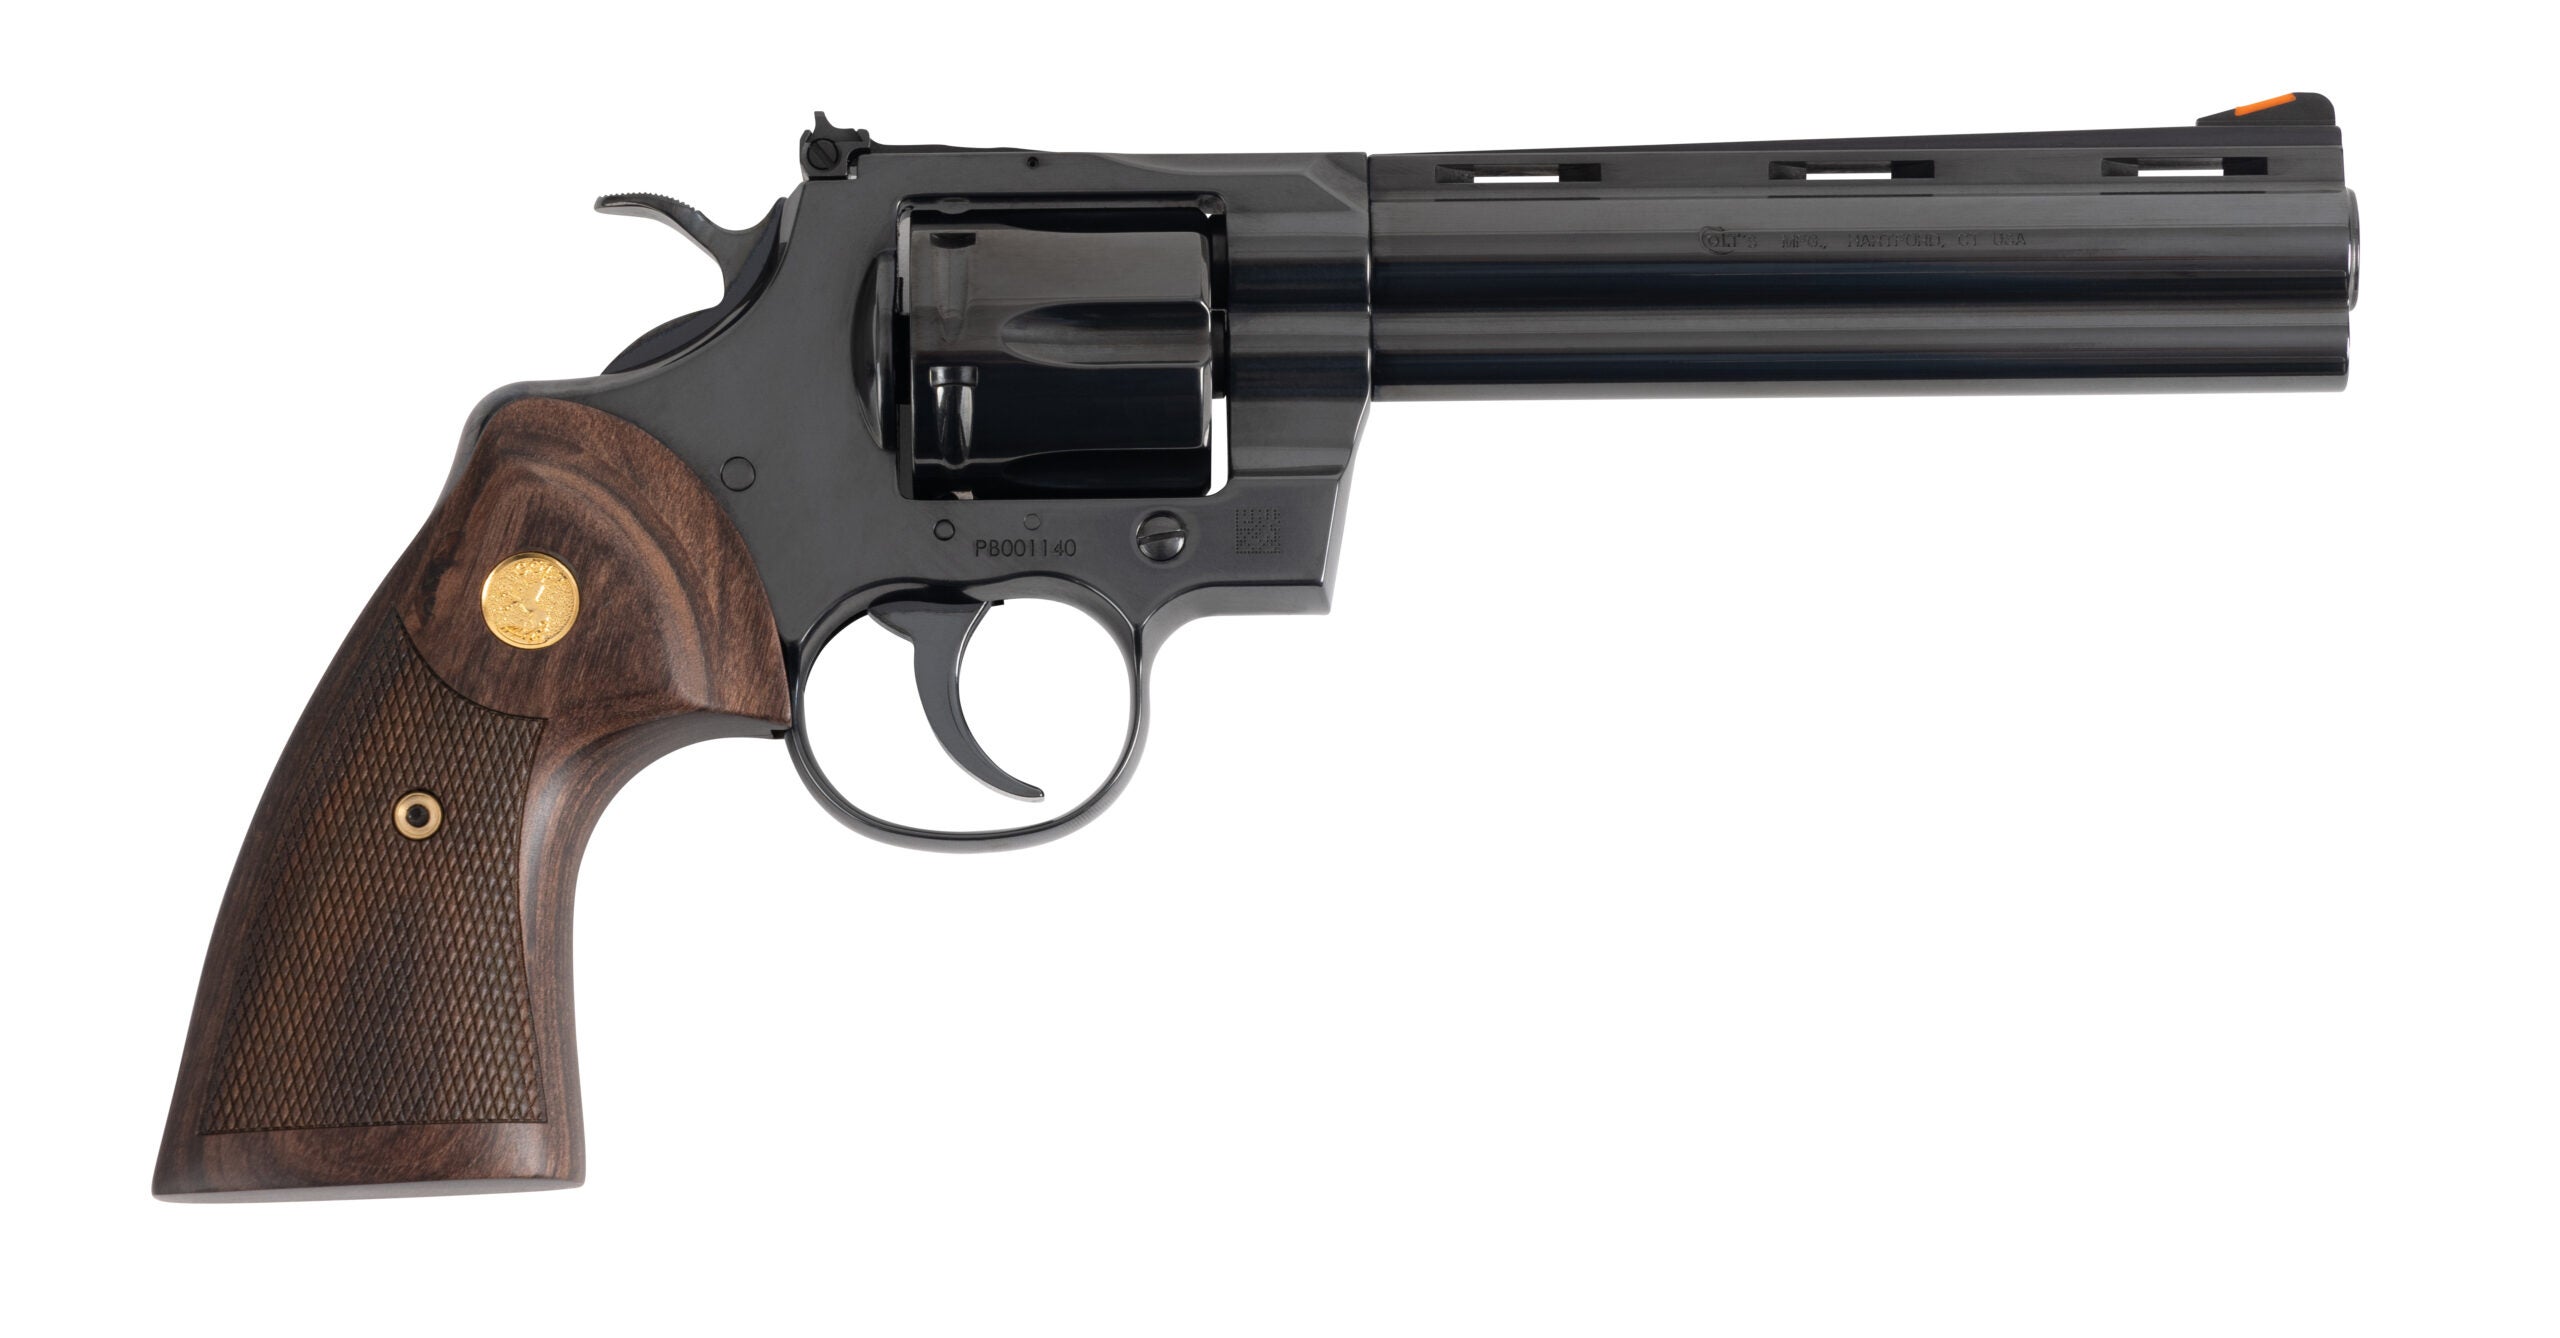 Colt Blued Python handgun on white background